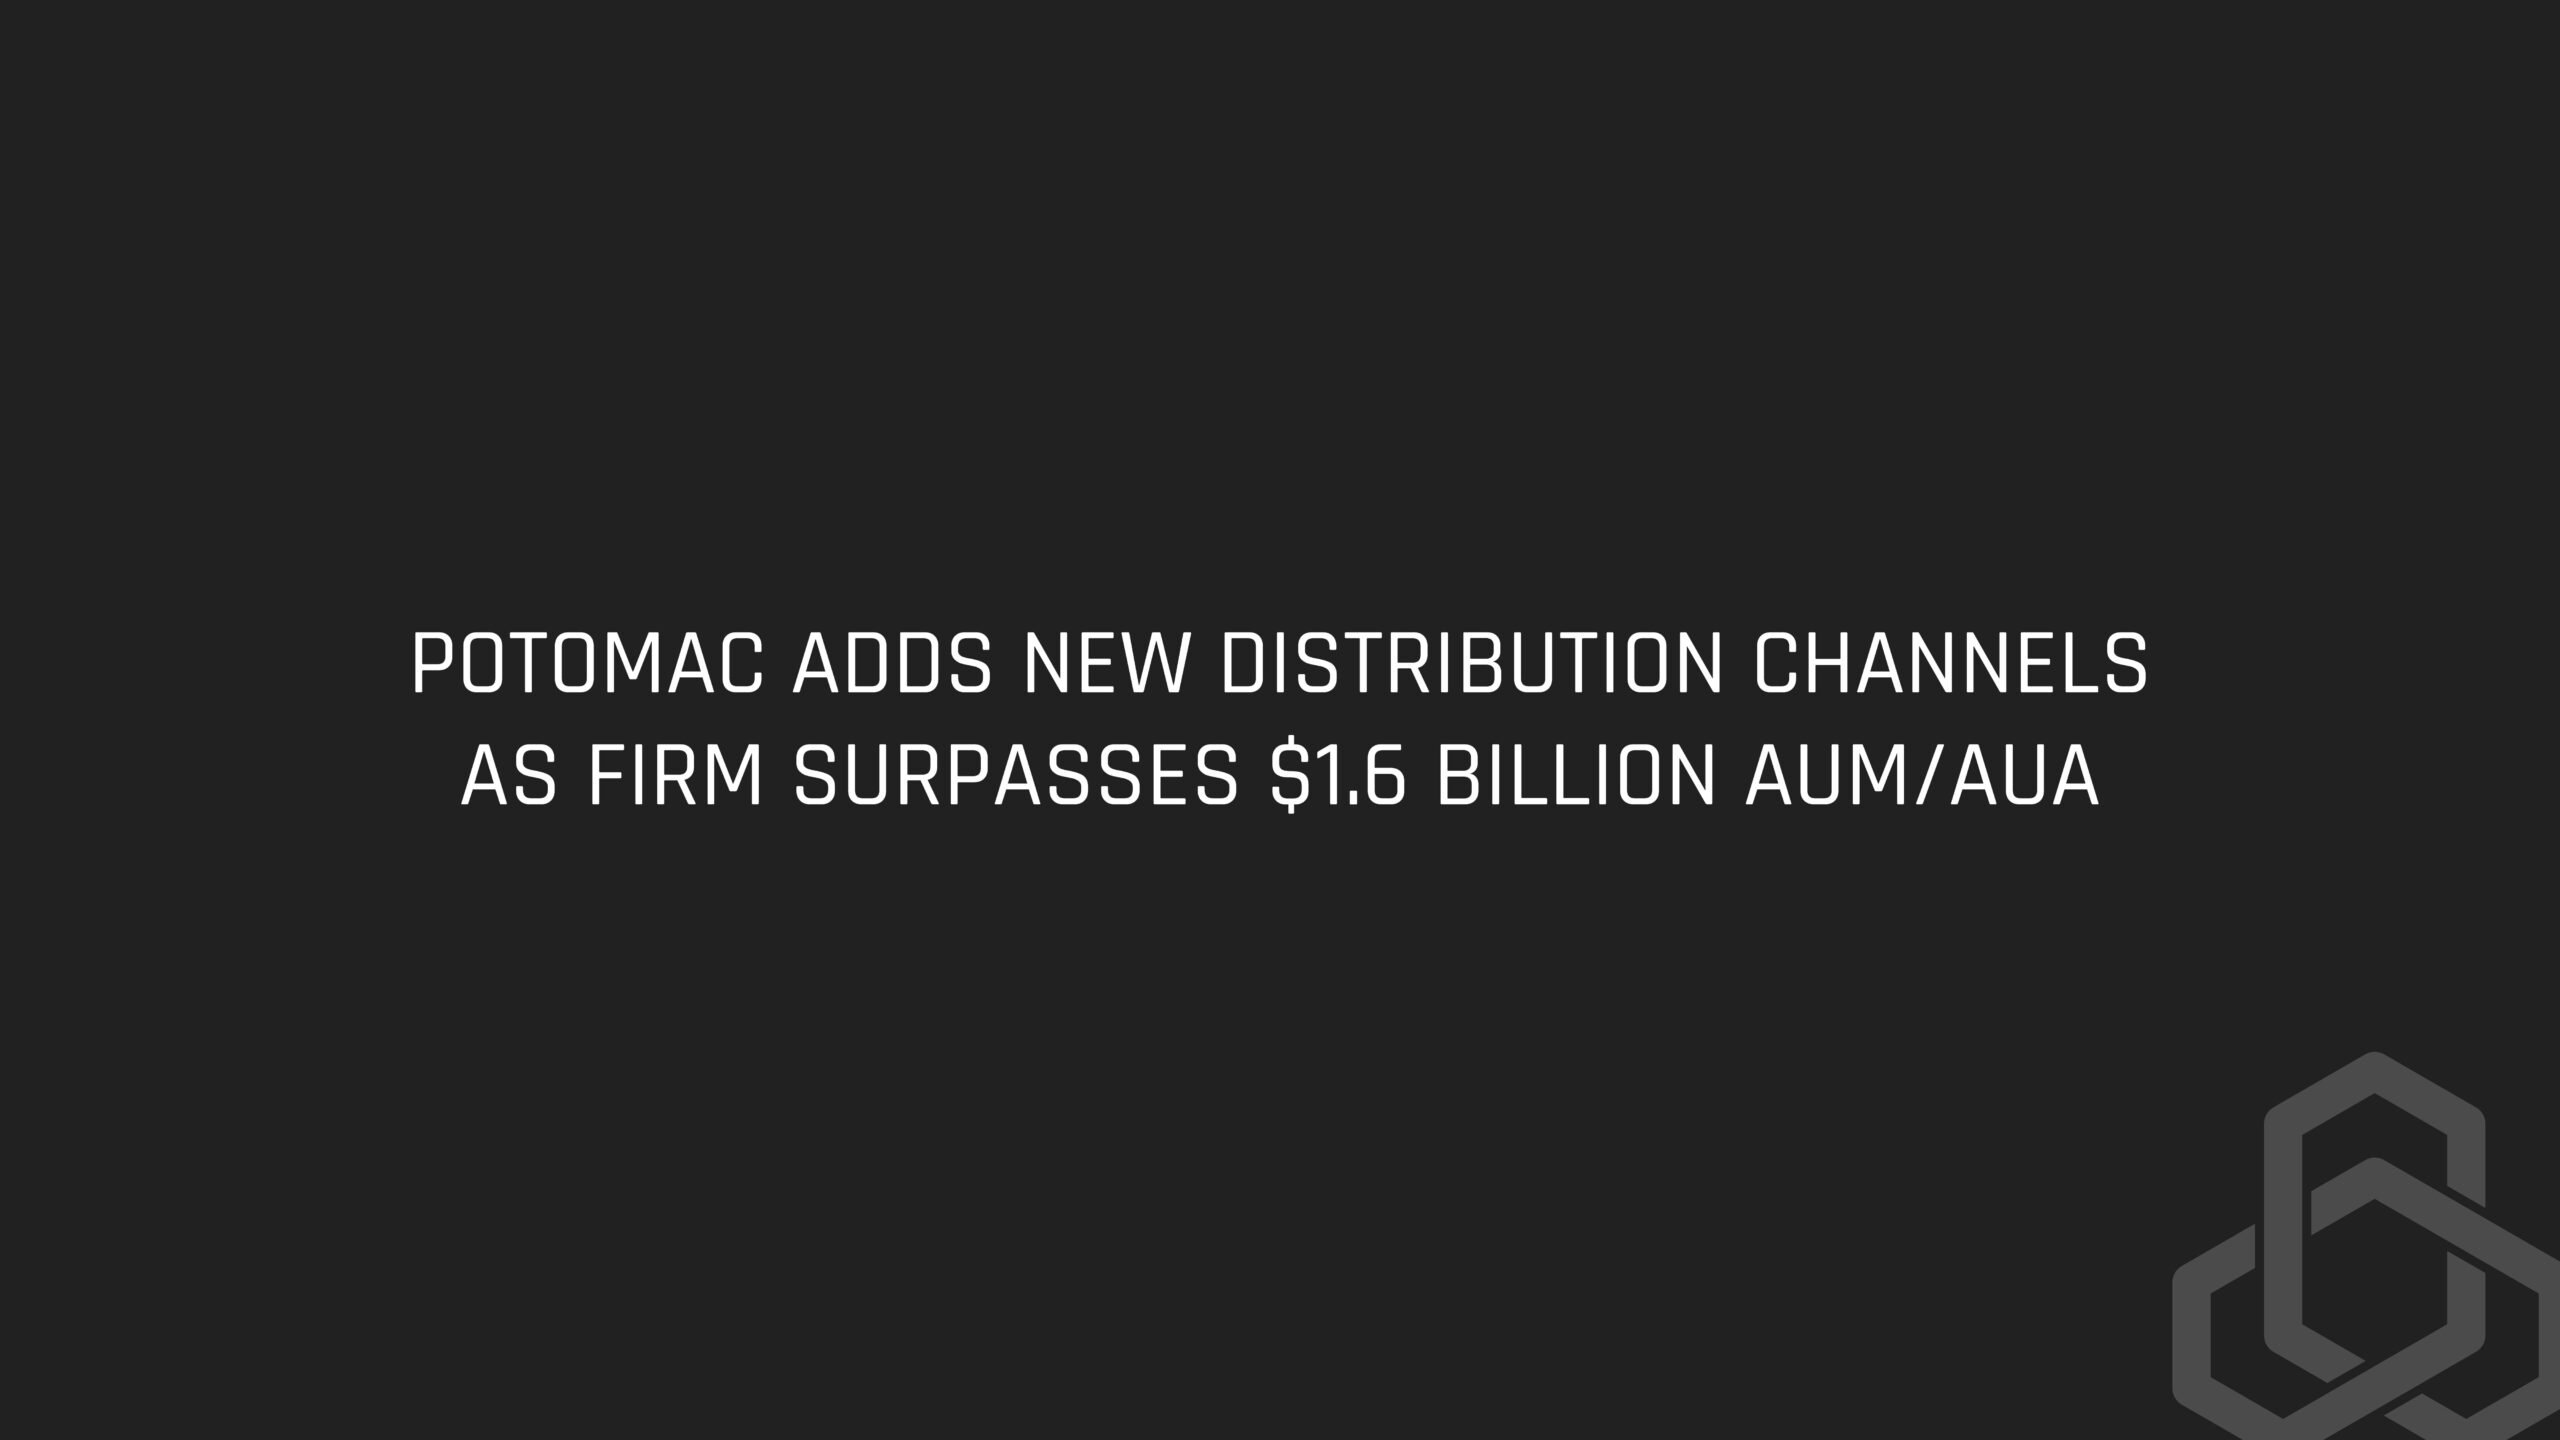 Potomac Adds New Distribution Channels as Firm Surpasses $1.6 Billion AUM/AUA